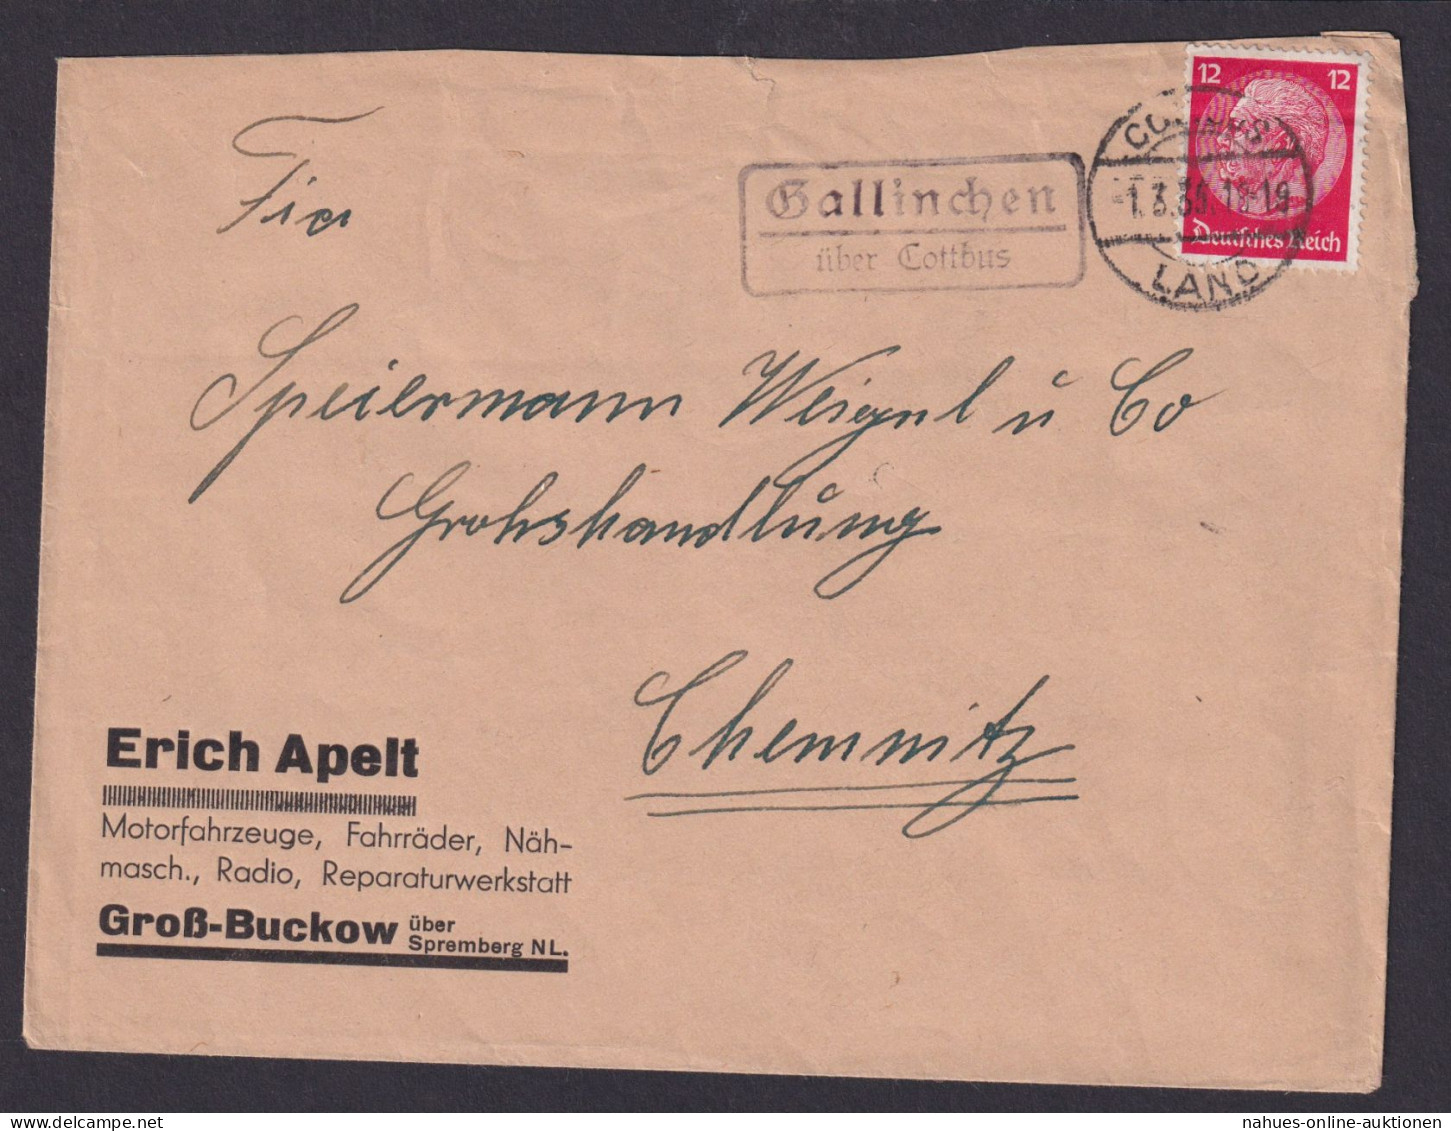 Gallinchen über Cottbus Brandenburg Deutsches Reich Brief Landpoststempel - Storia Postale